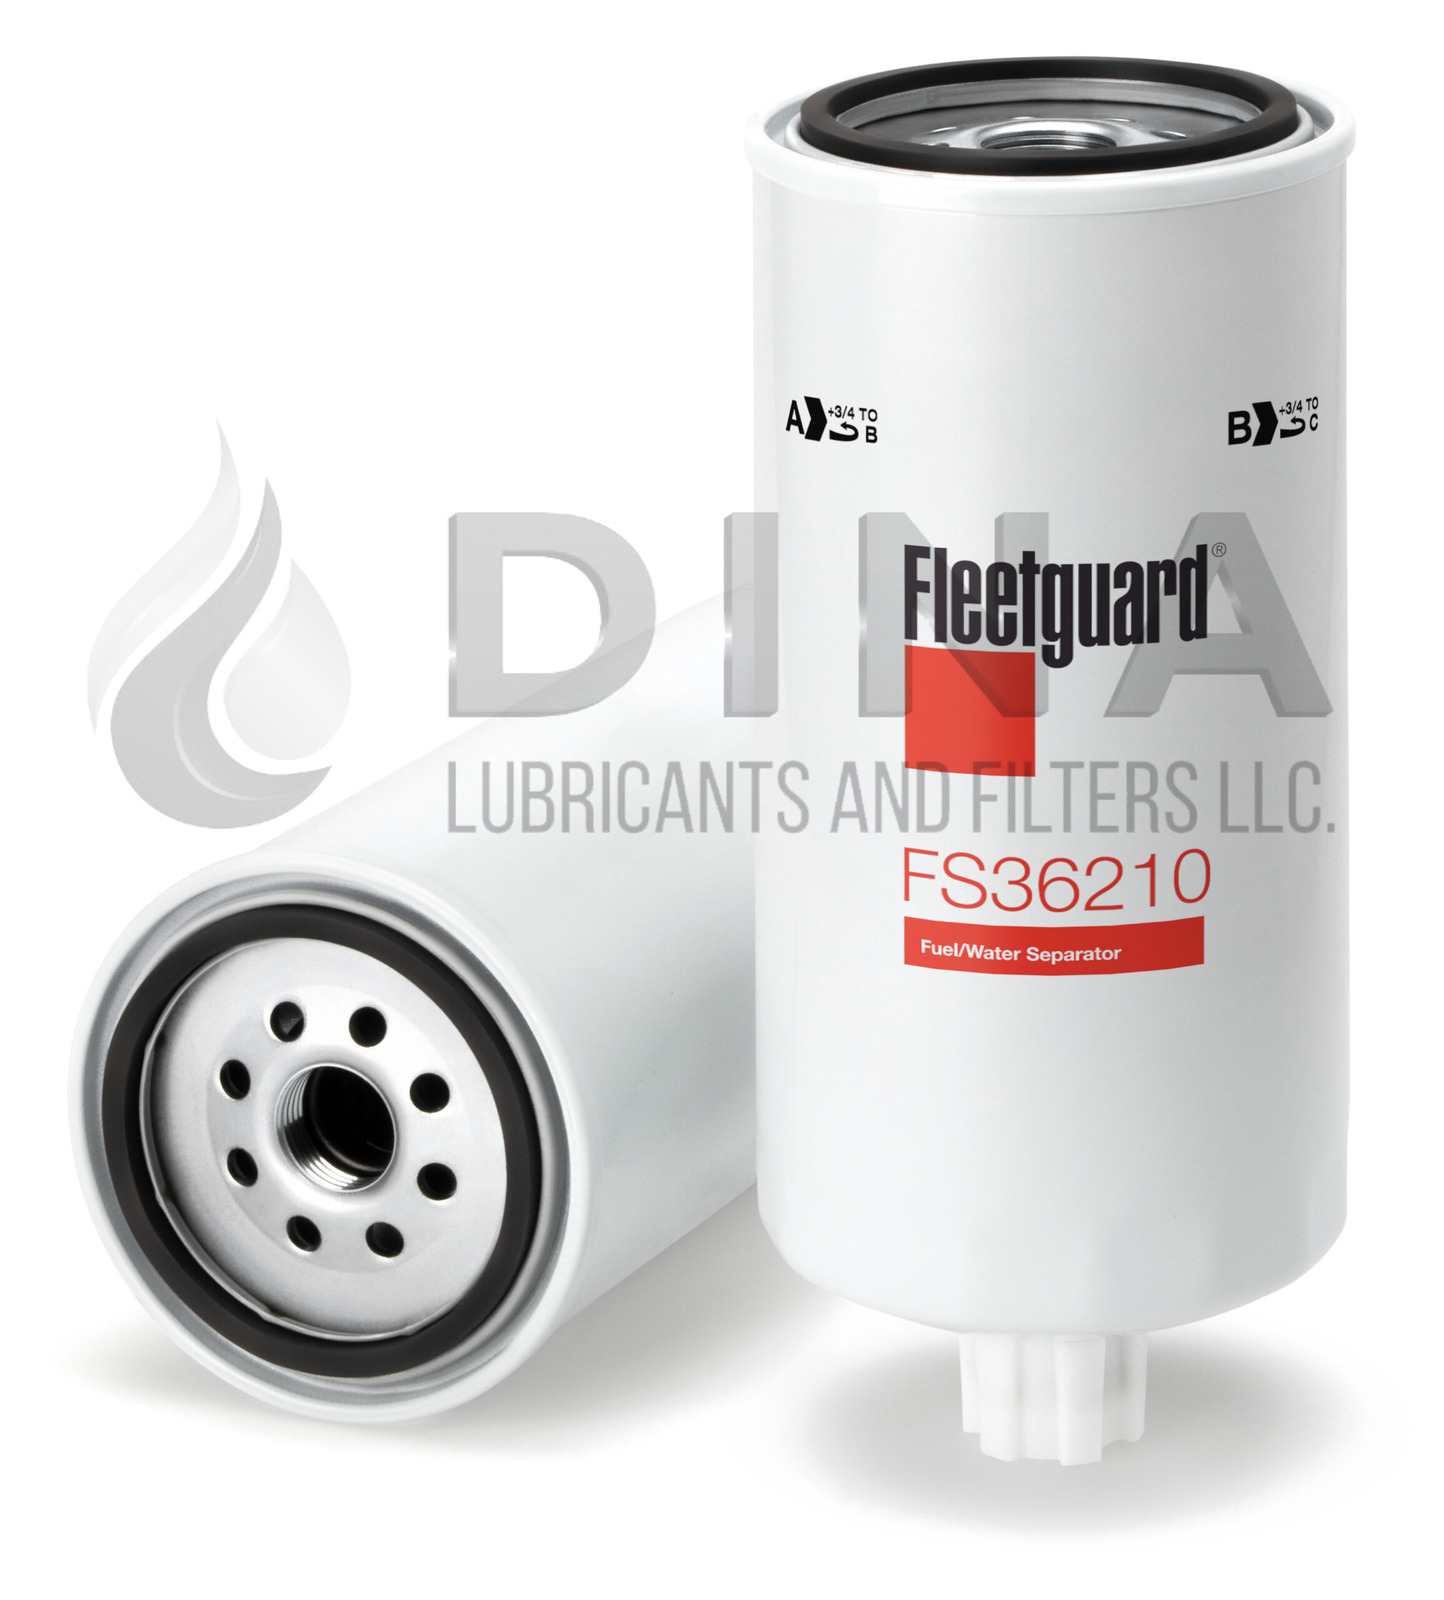 Fleetguard Genuine Fuel/Water Separator FS36210